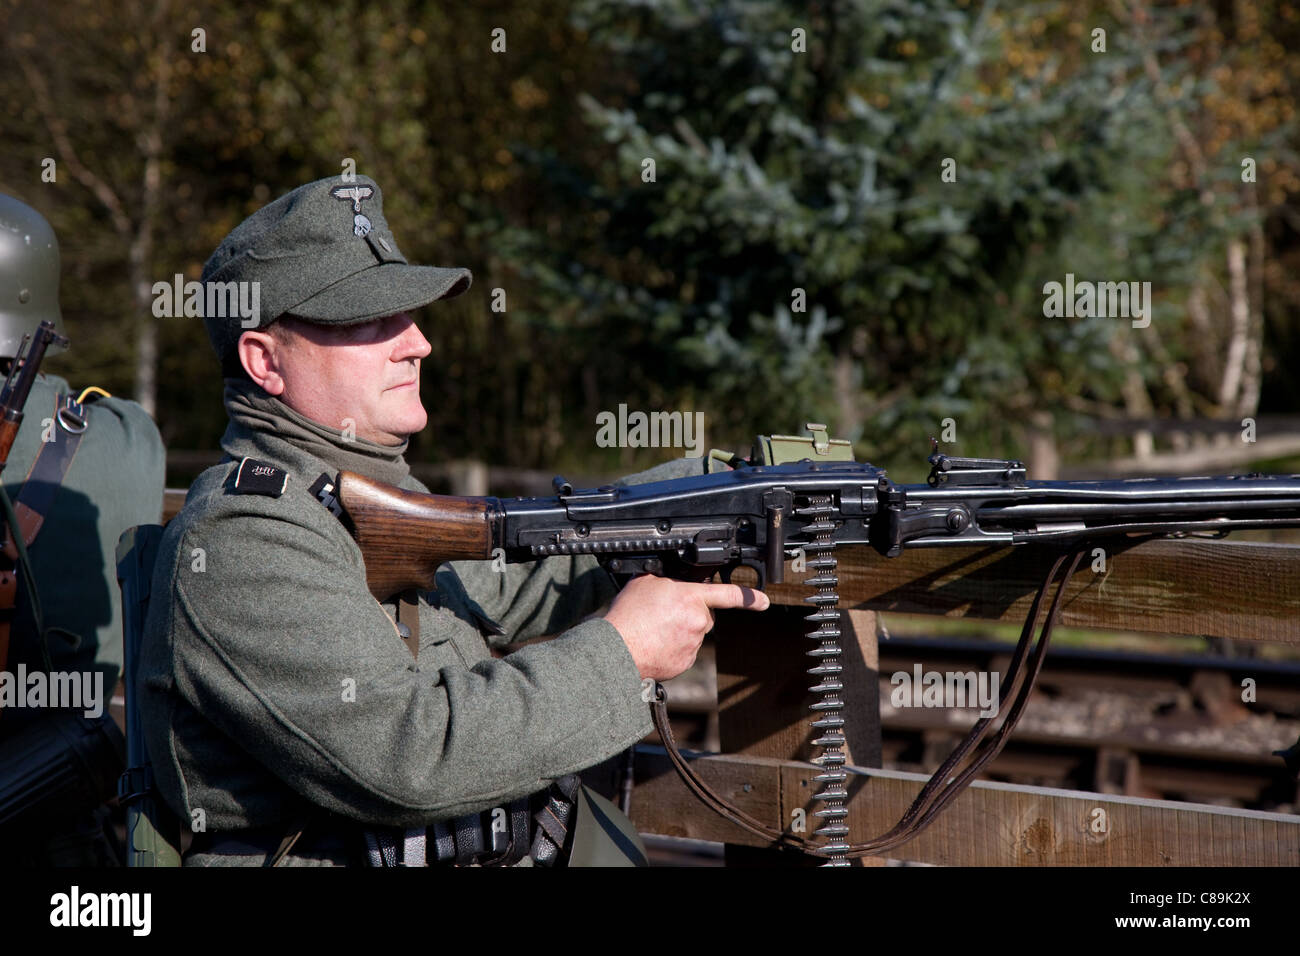 Les Allemands de 'le Visham' ou de Levisham en octobre 2011  soldats costumés à la mitrailleuse MG 42, aux armes de la Seconde Guerre mondiale, à la Seconde Guerre mondiale, à la Seconde Guerre mondiale, aux réacteurs de la Seconde Guerre mondiale à la fin de semaine de la guerre de Pickering et de la guerre, North Yorkshire, Royaume-Uni Banque D'Images